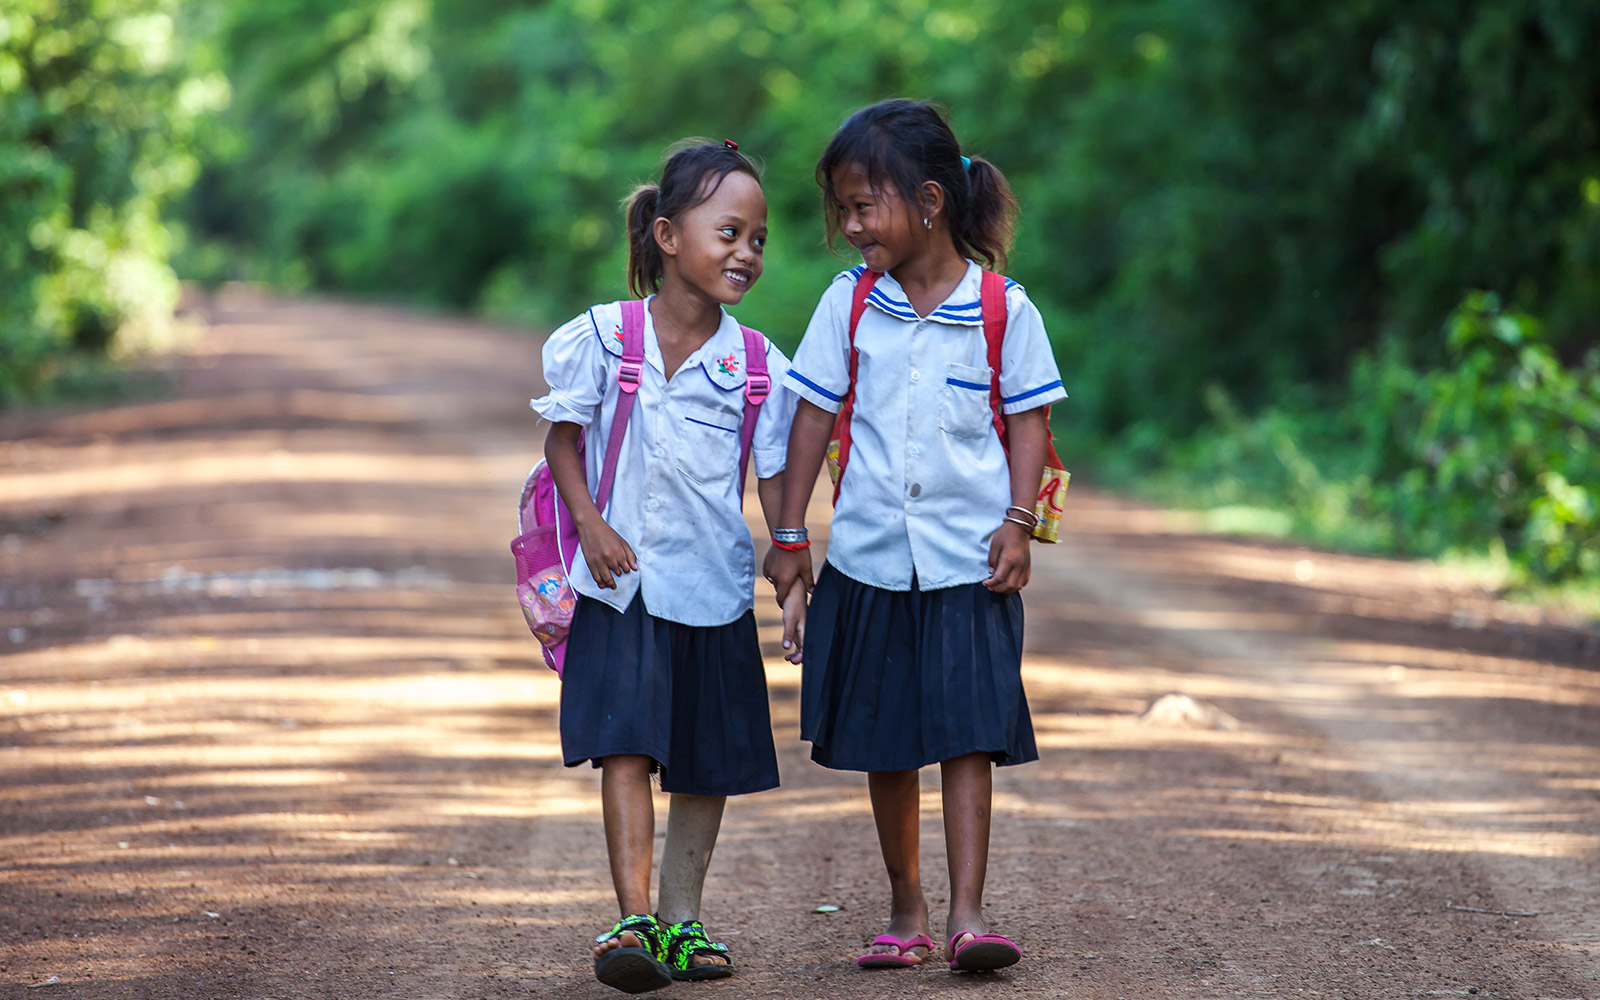 Cambodge, Kampong Cham, Channa a été appareillée d’une prothèse par HI, ici sur le chemin de l'école avec une camarade.